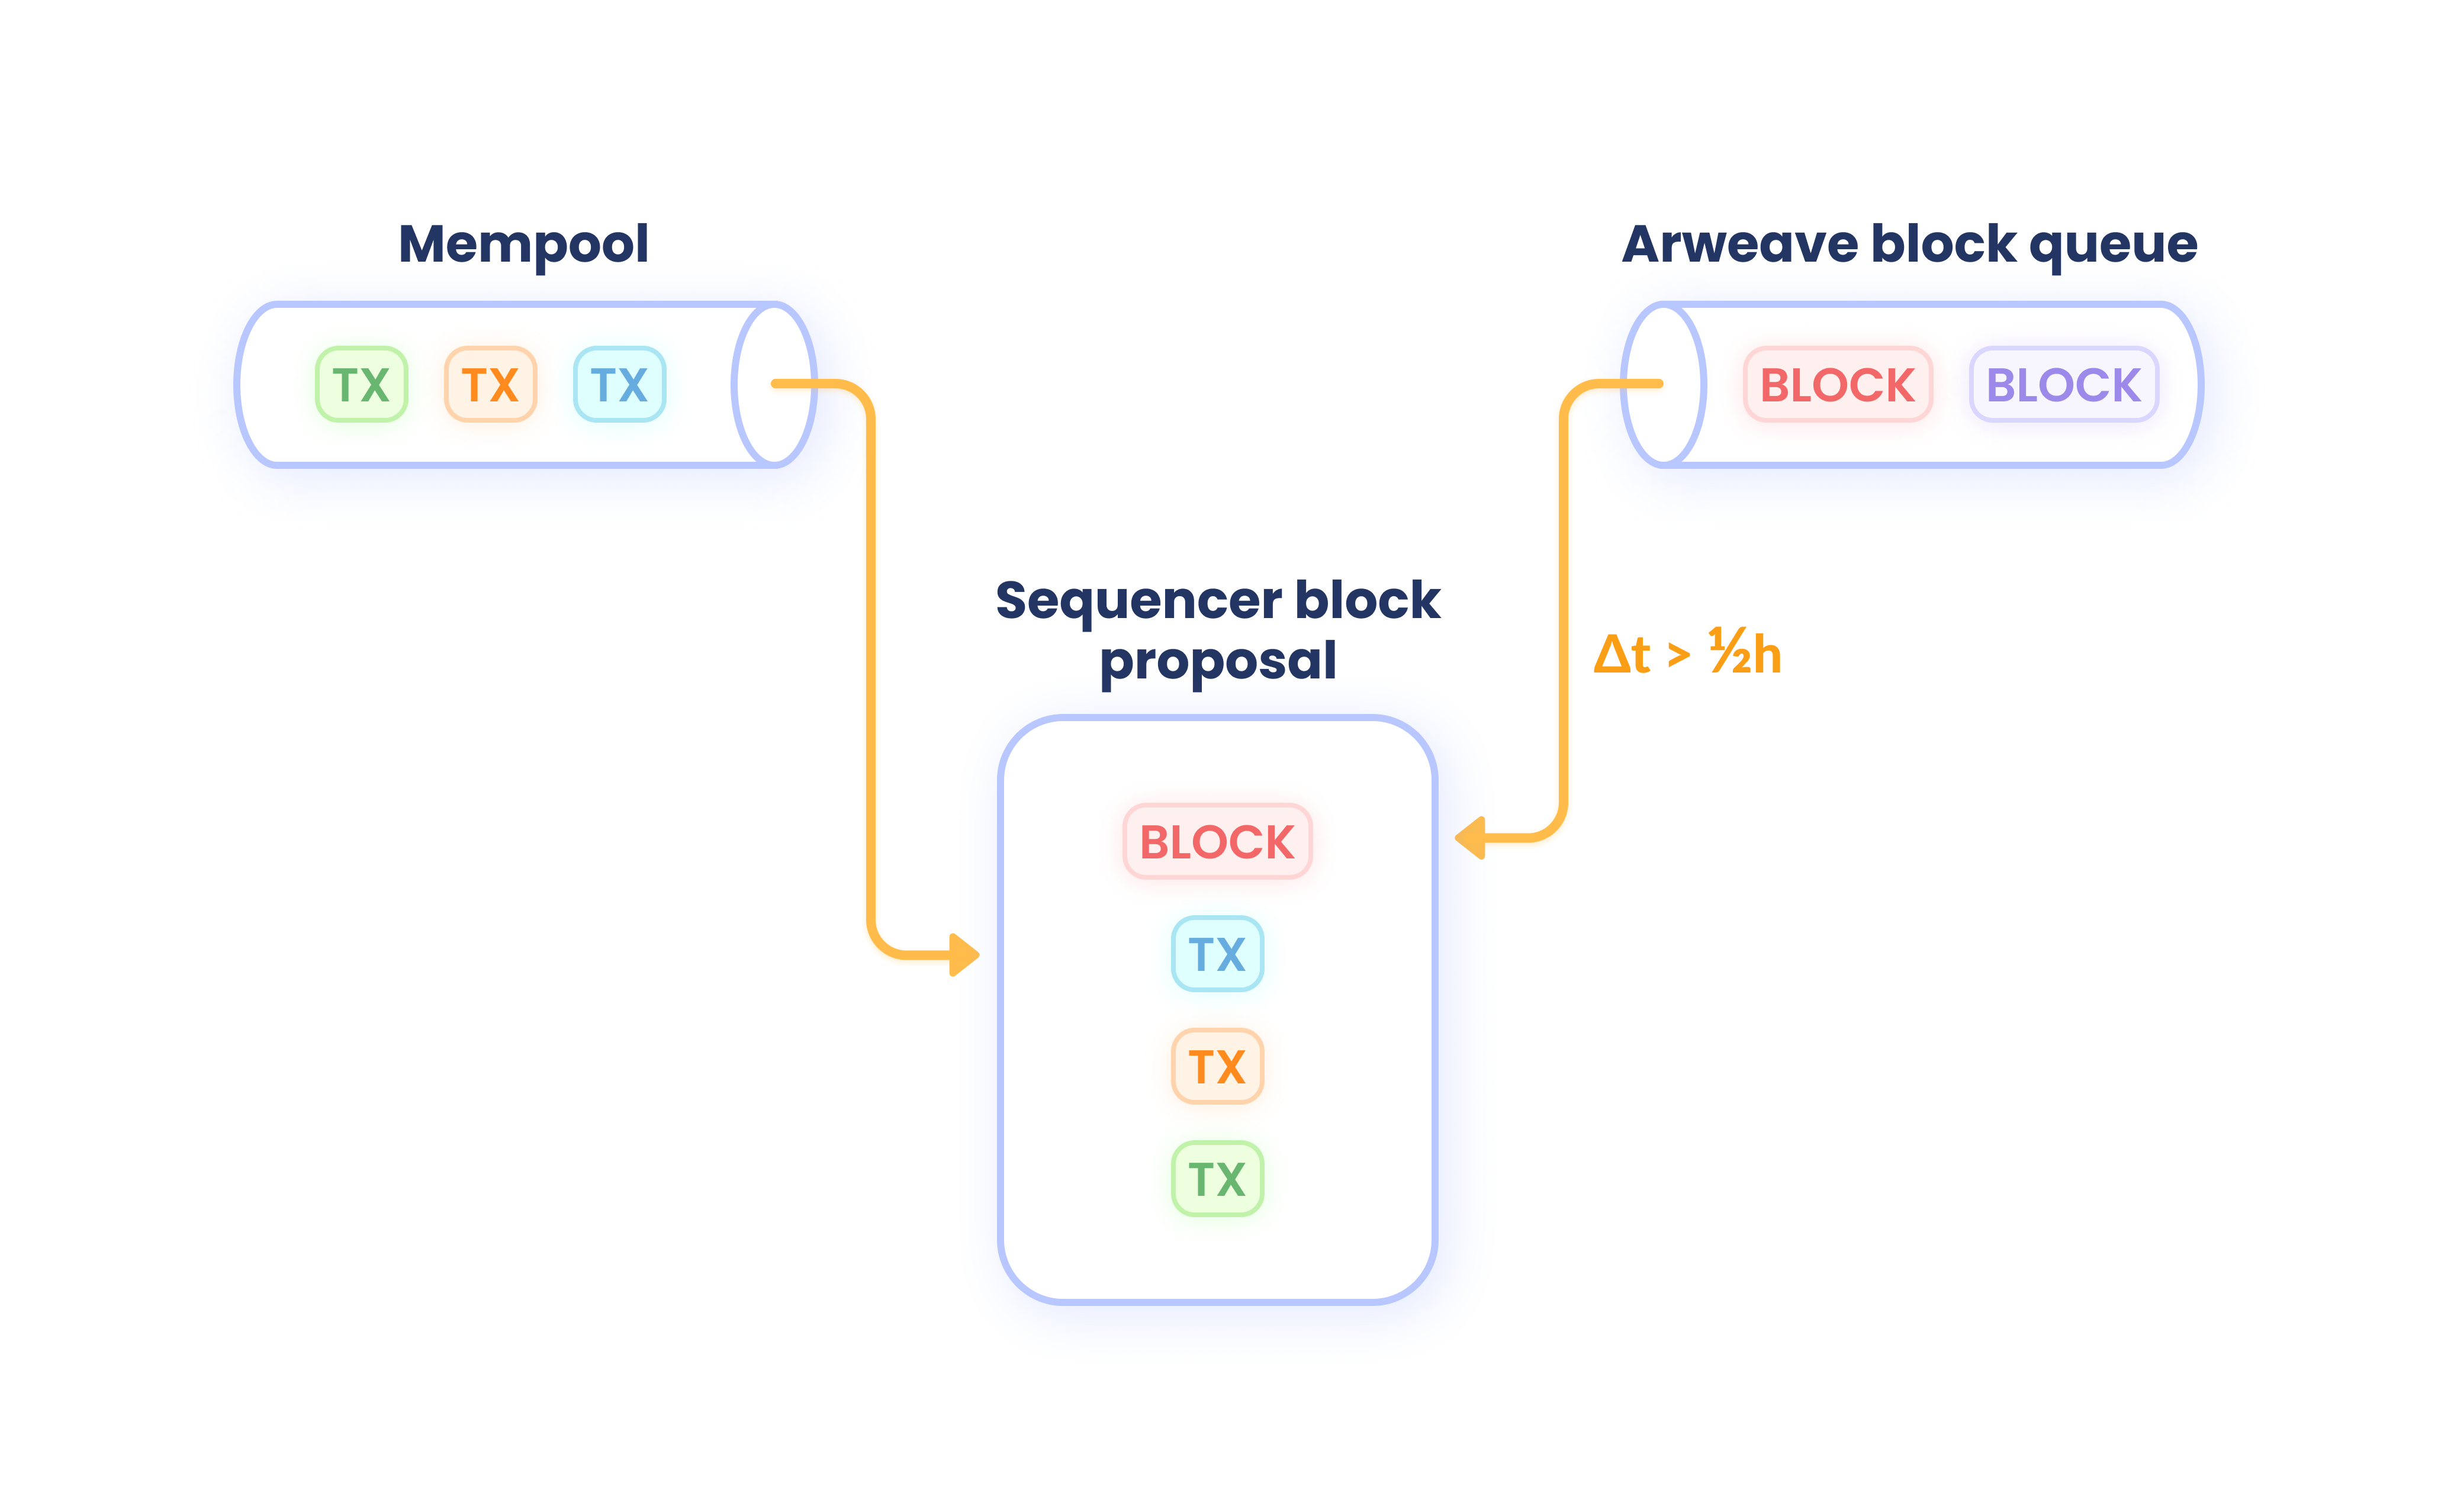 Creating a block proposal